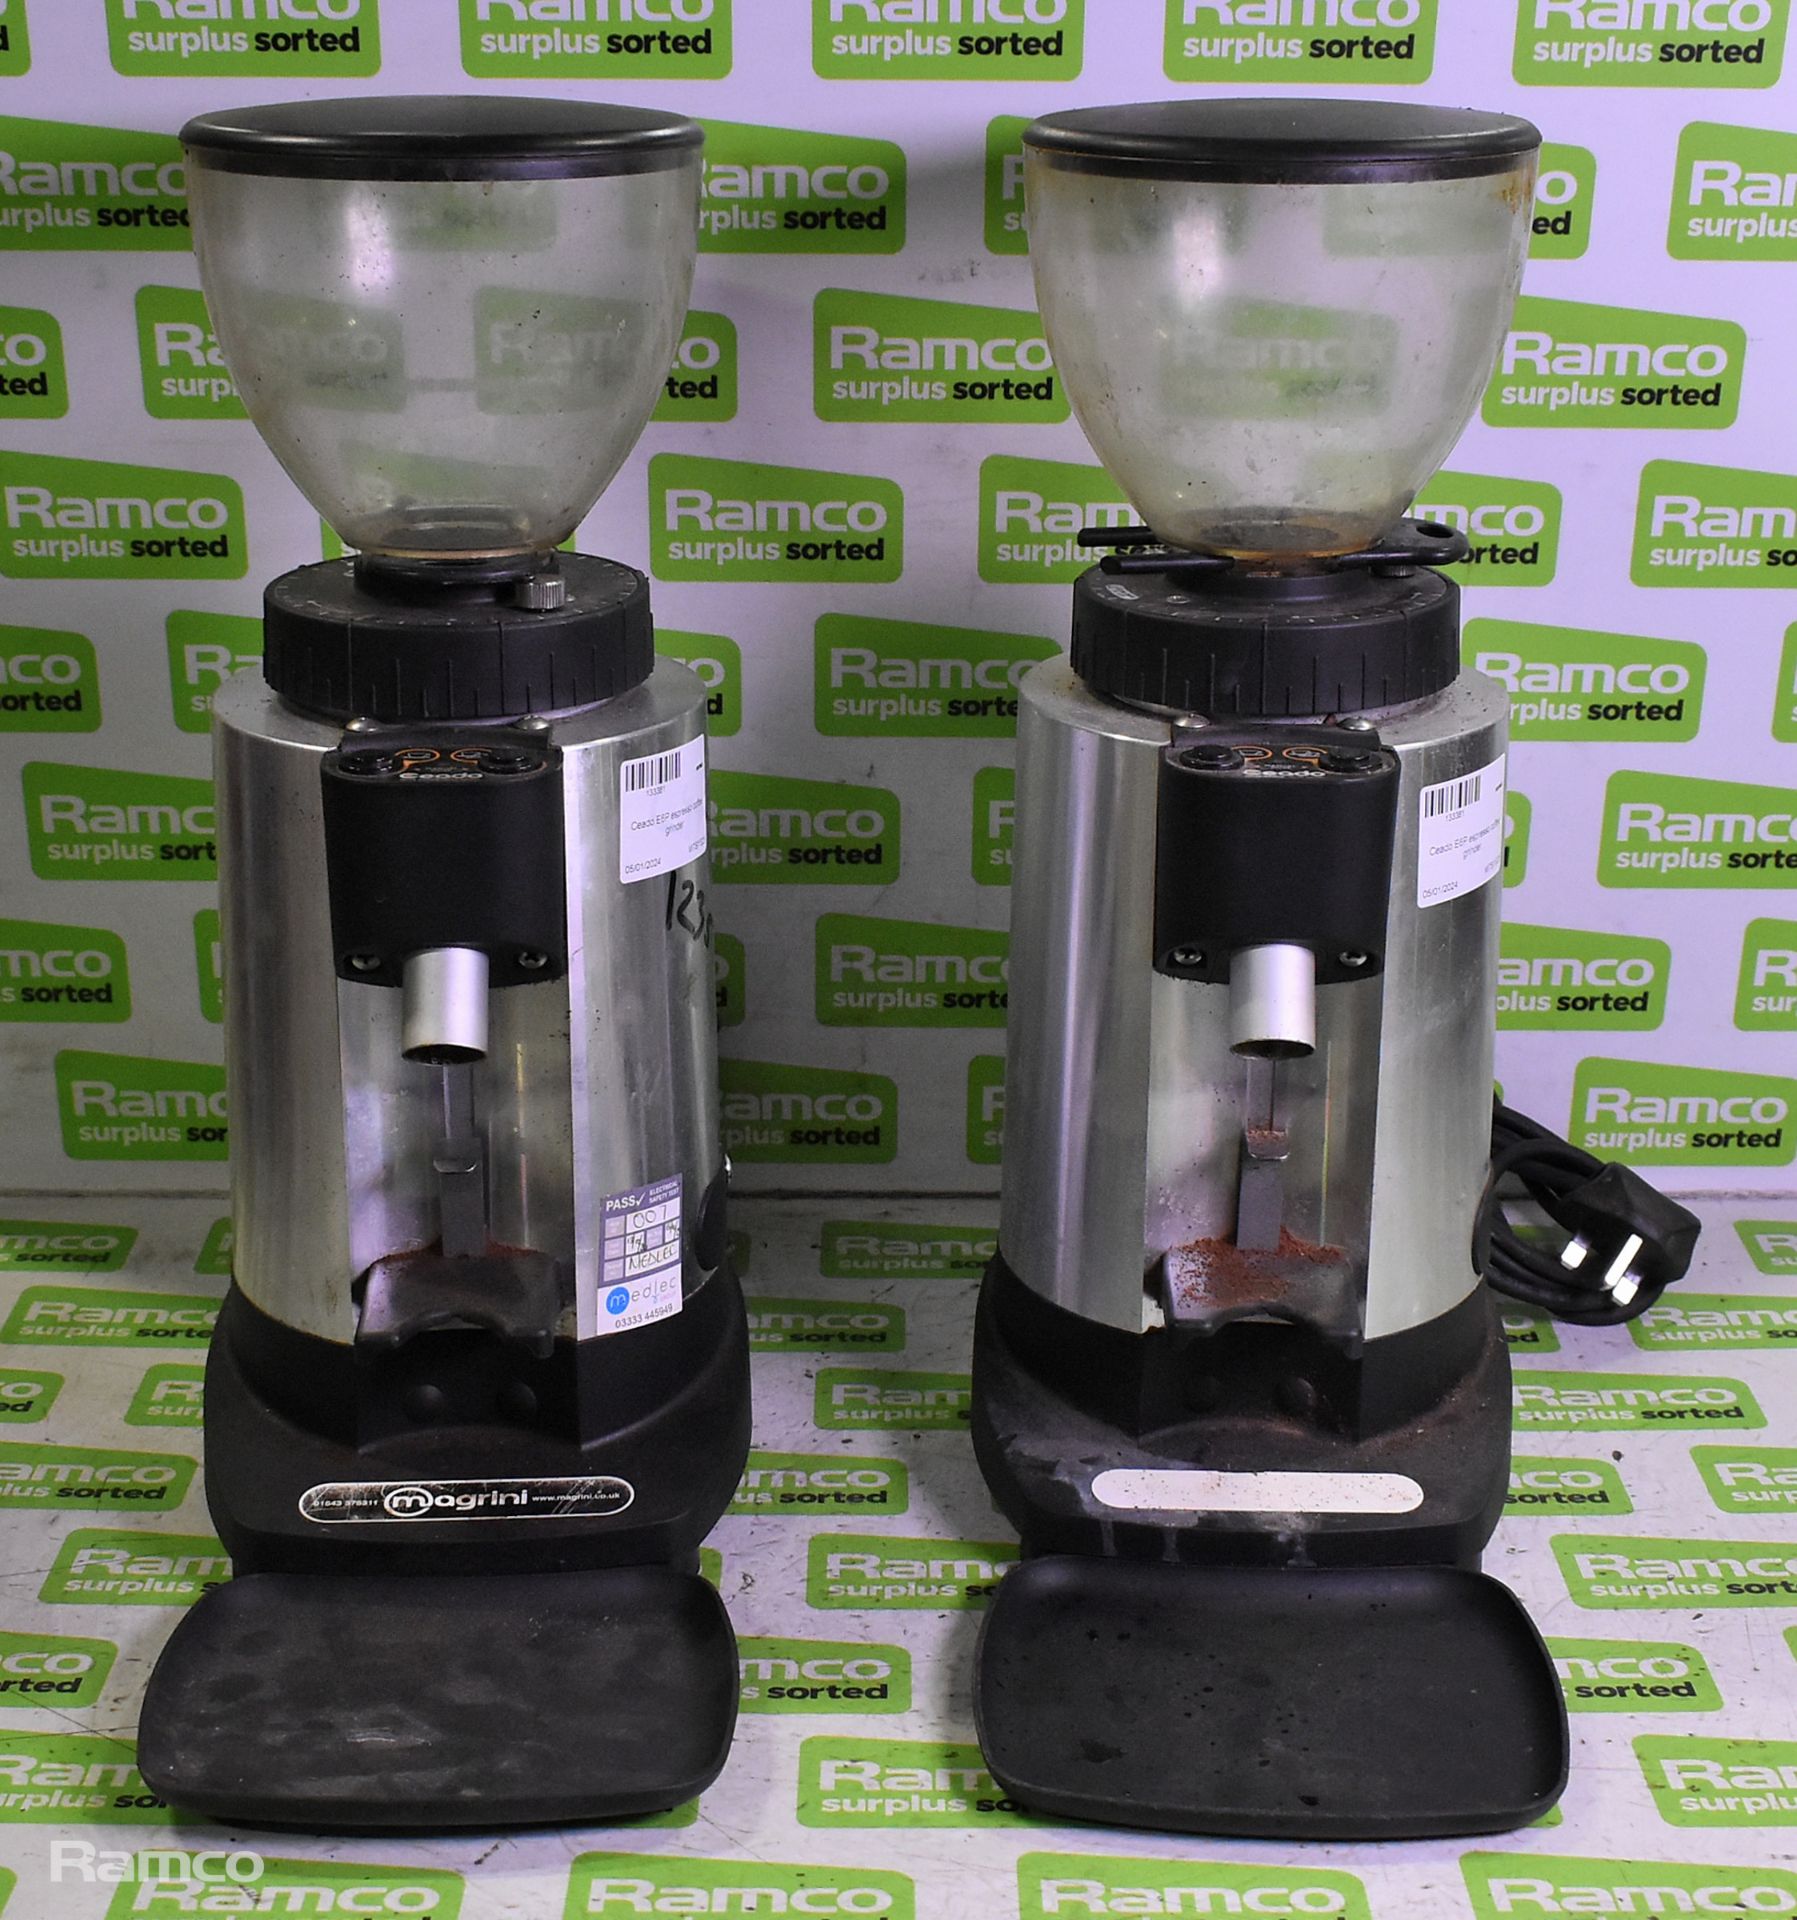 2x Ceado E6P espresso coffee grinders